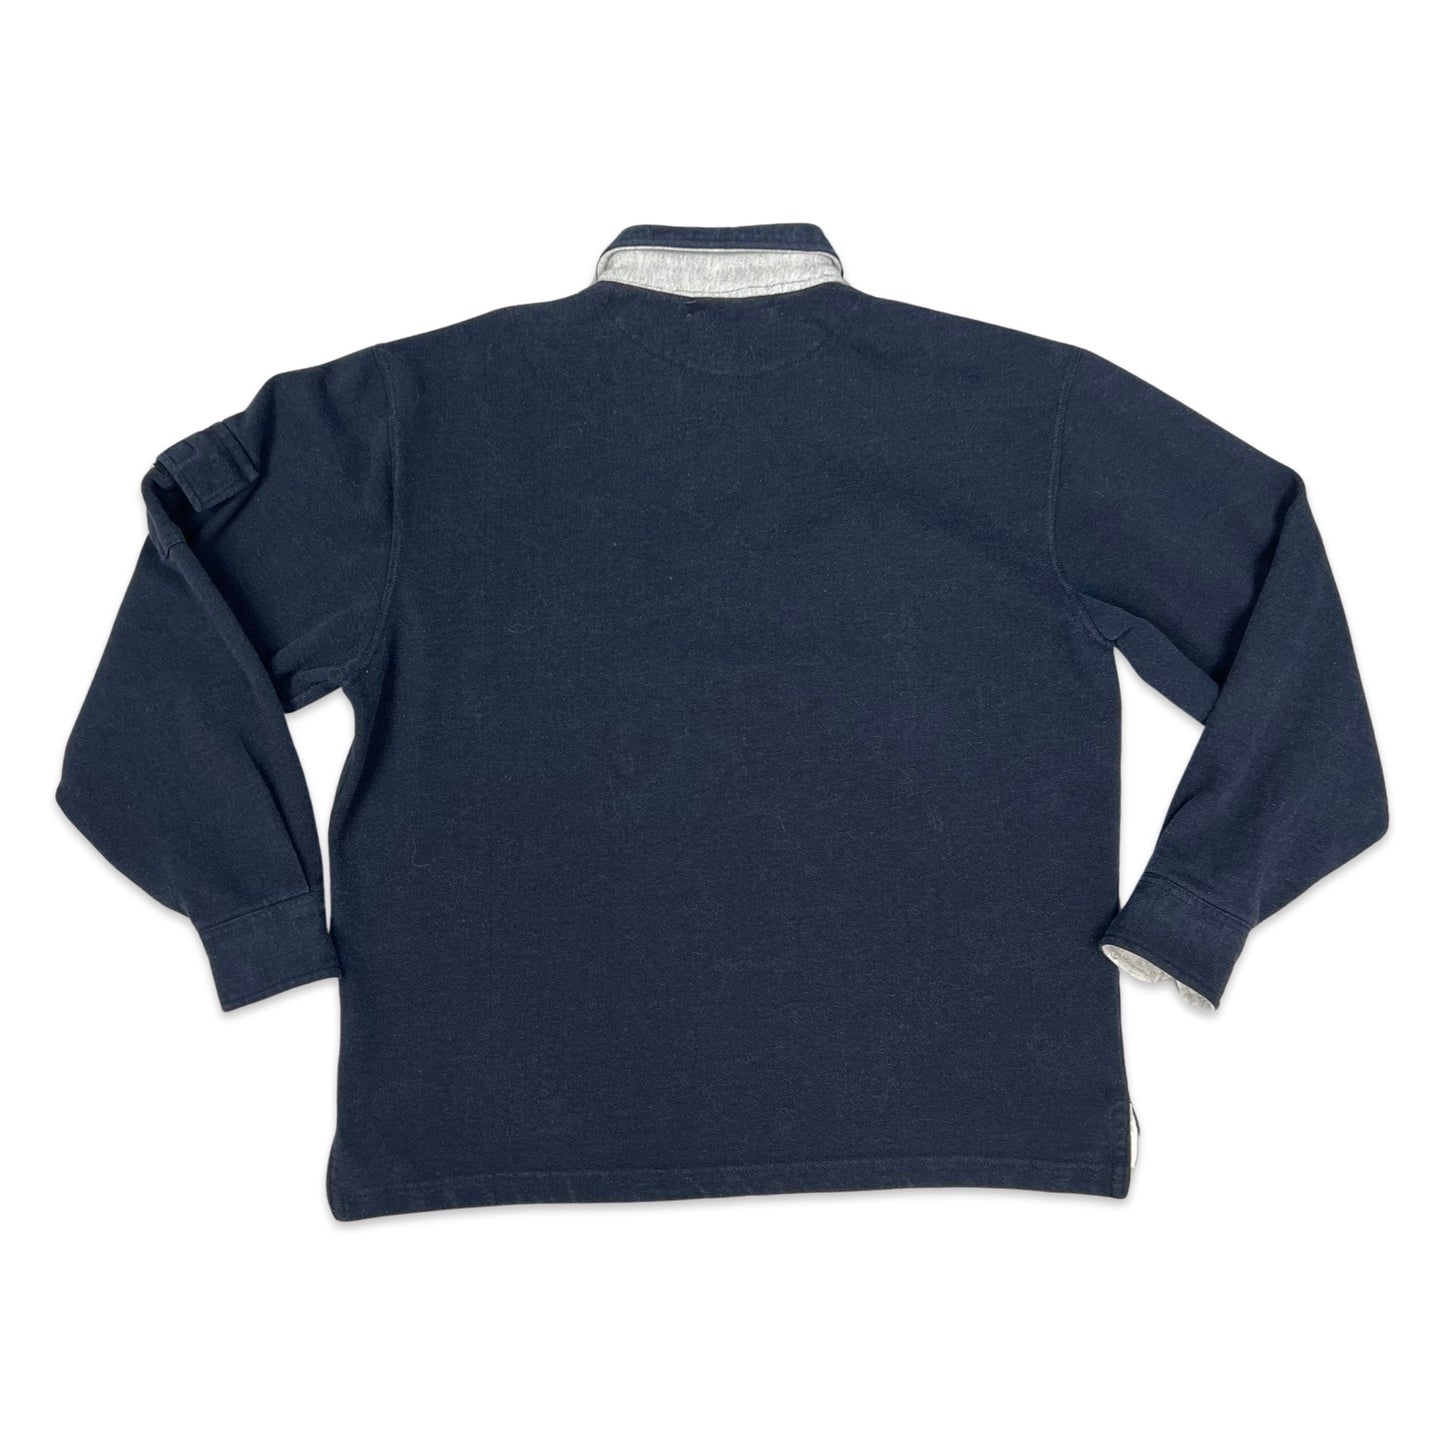 Vintage 80s 90s Ralph Lauren Navy Collared Sweatshirt L XL